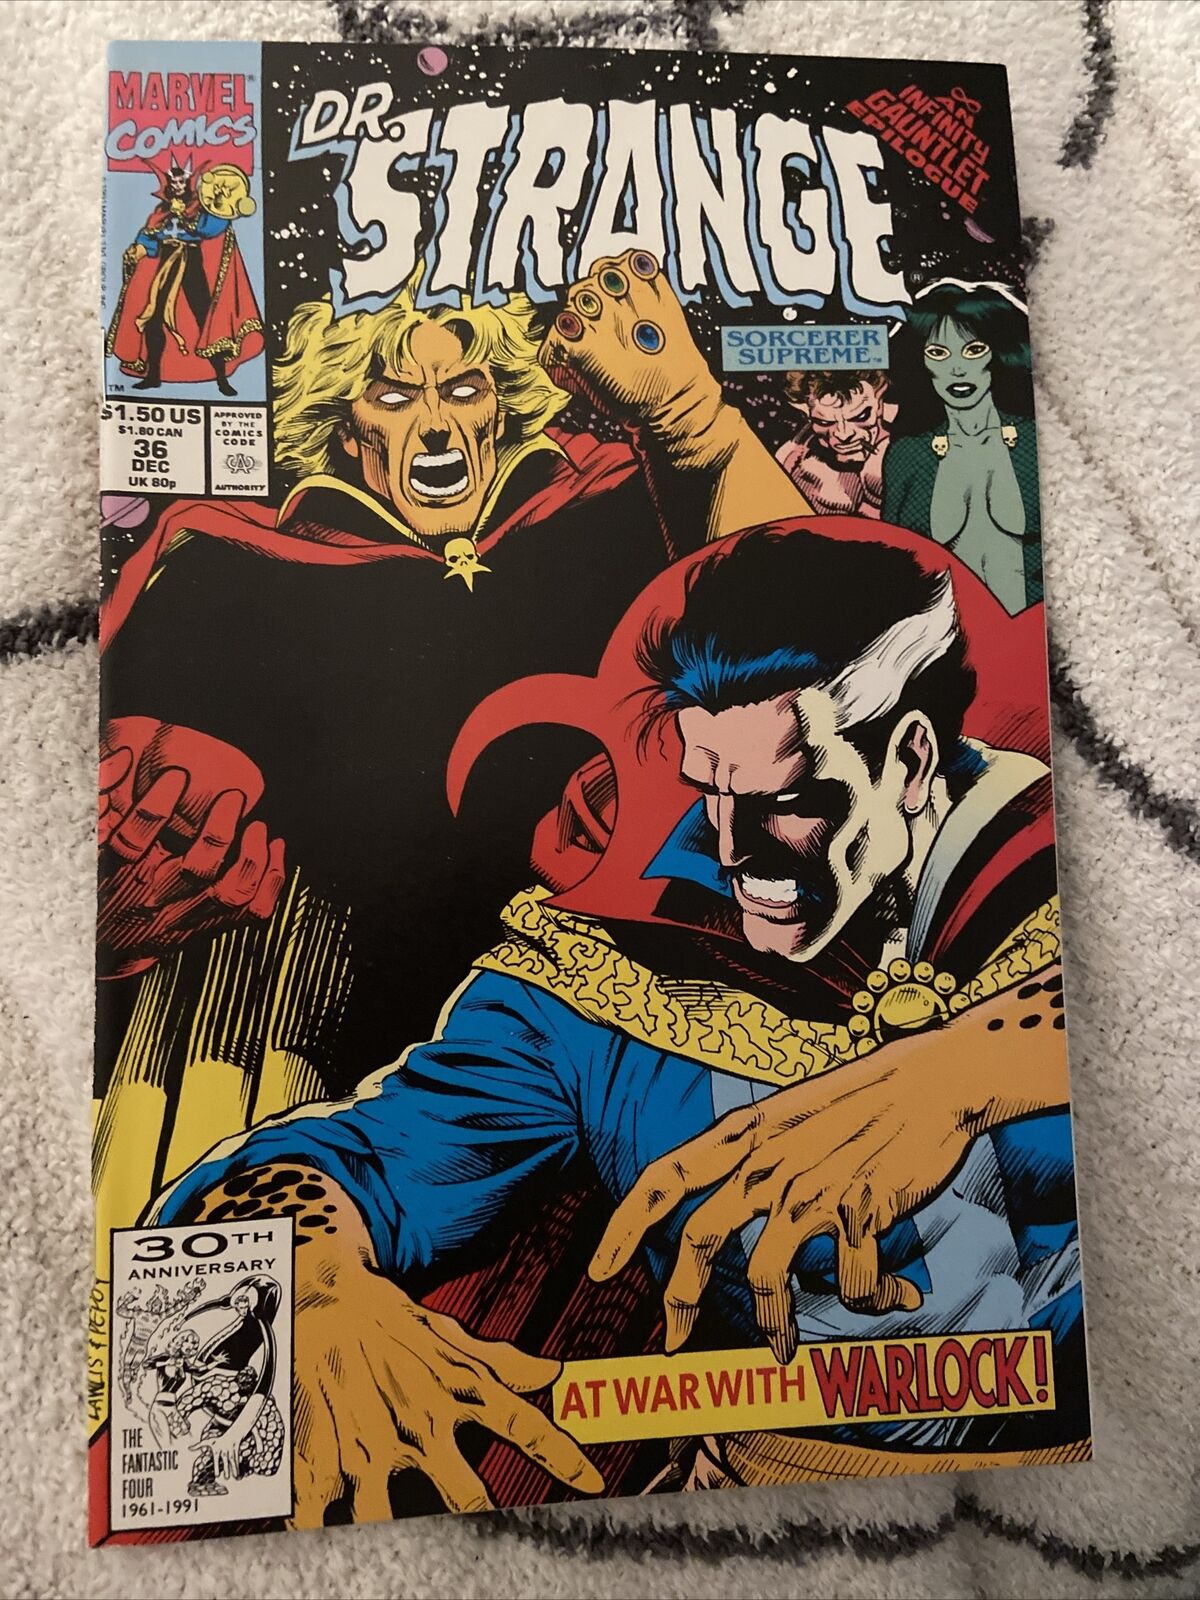 Doctor Strange Marvel Comic Art Wallpapers